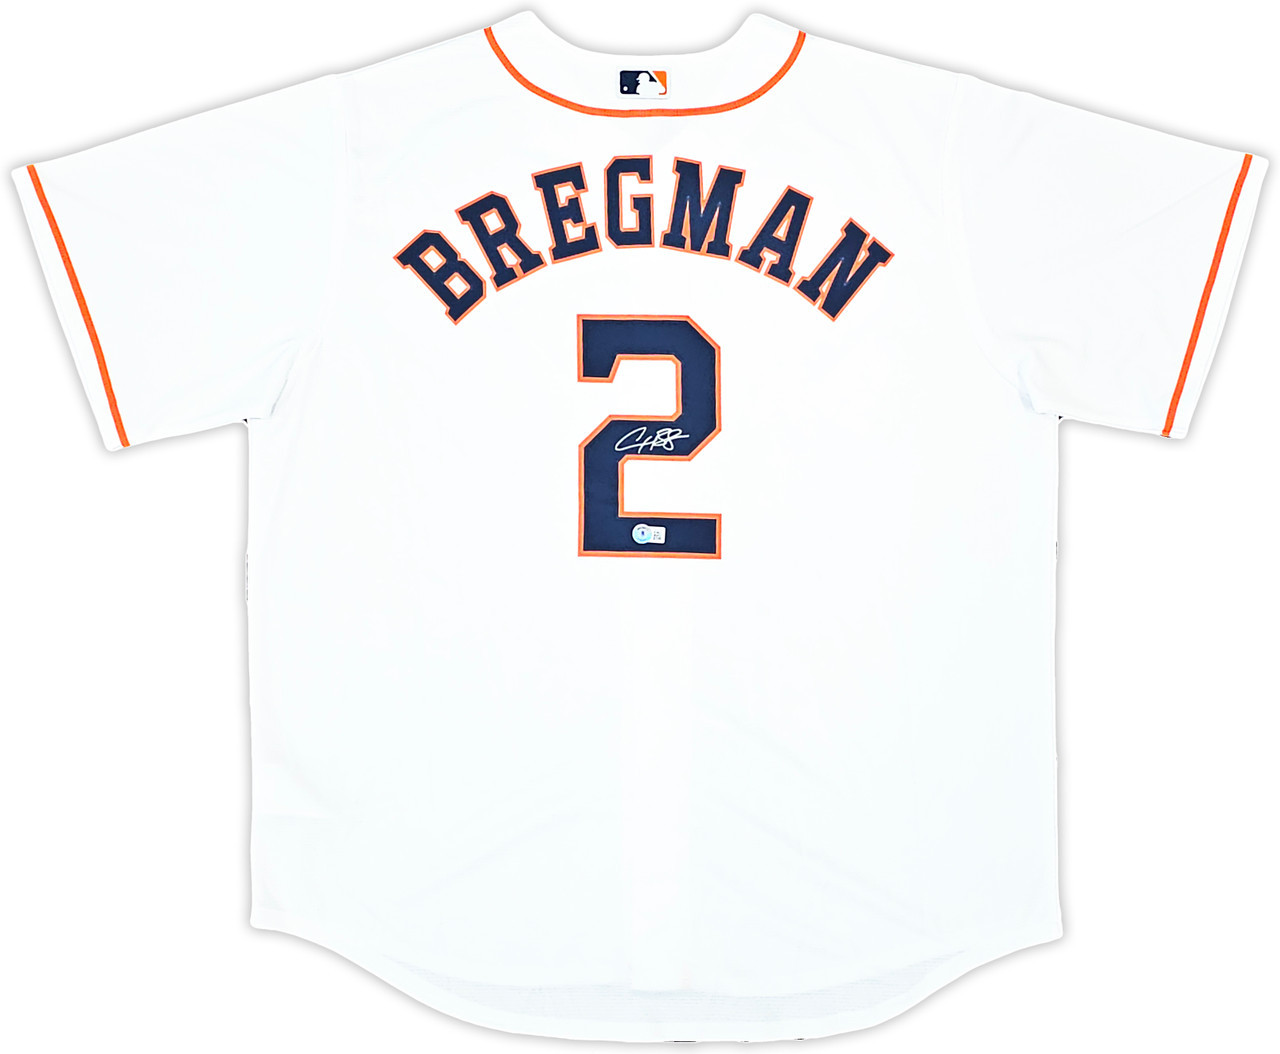 Alex Bregman Houston Astros Autographed White Nike Jersey Size XL